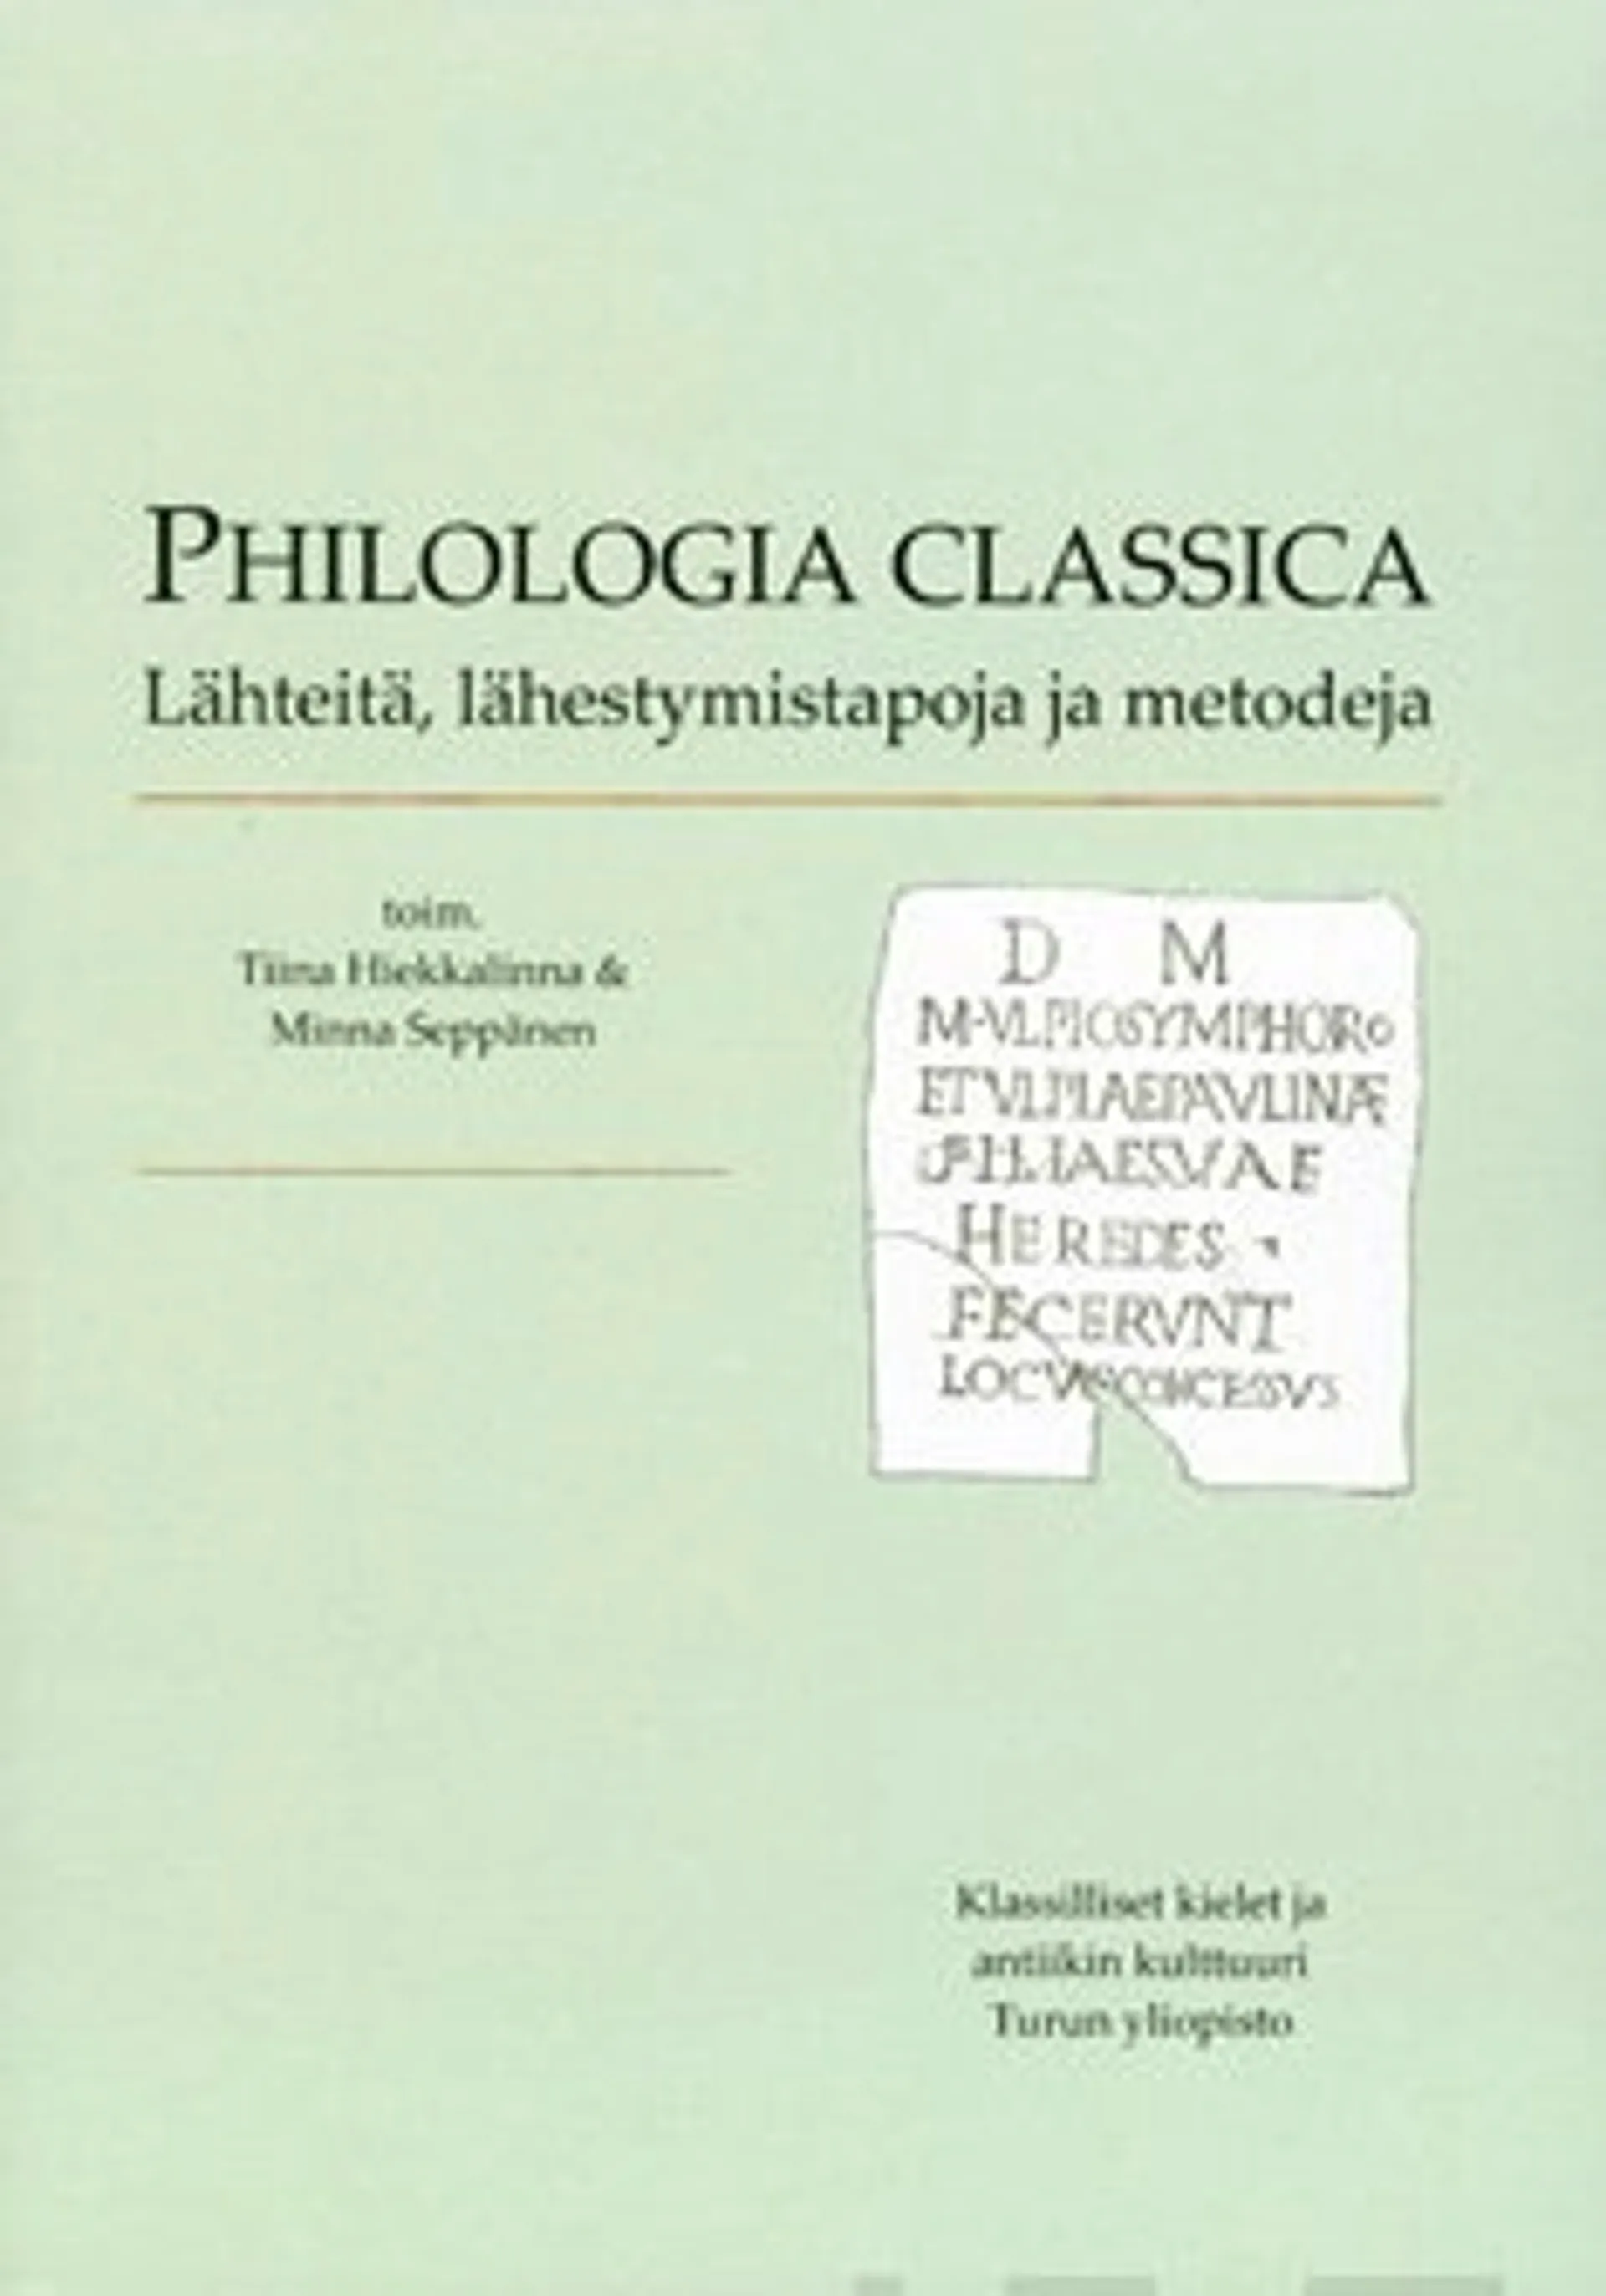 Philologia classica